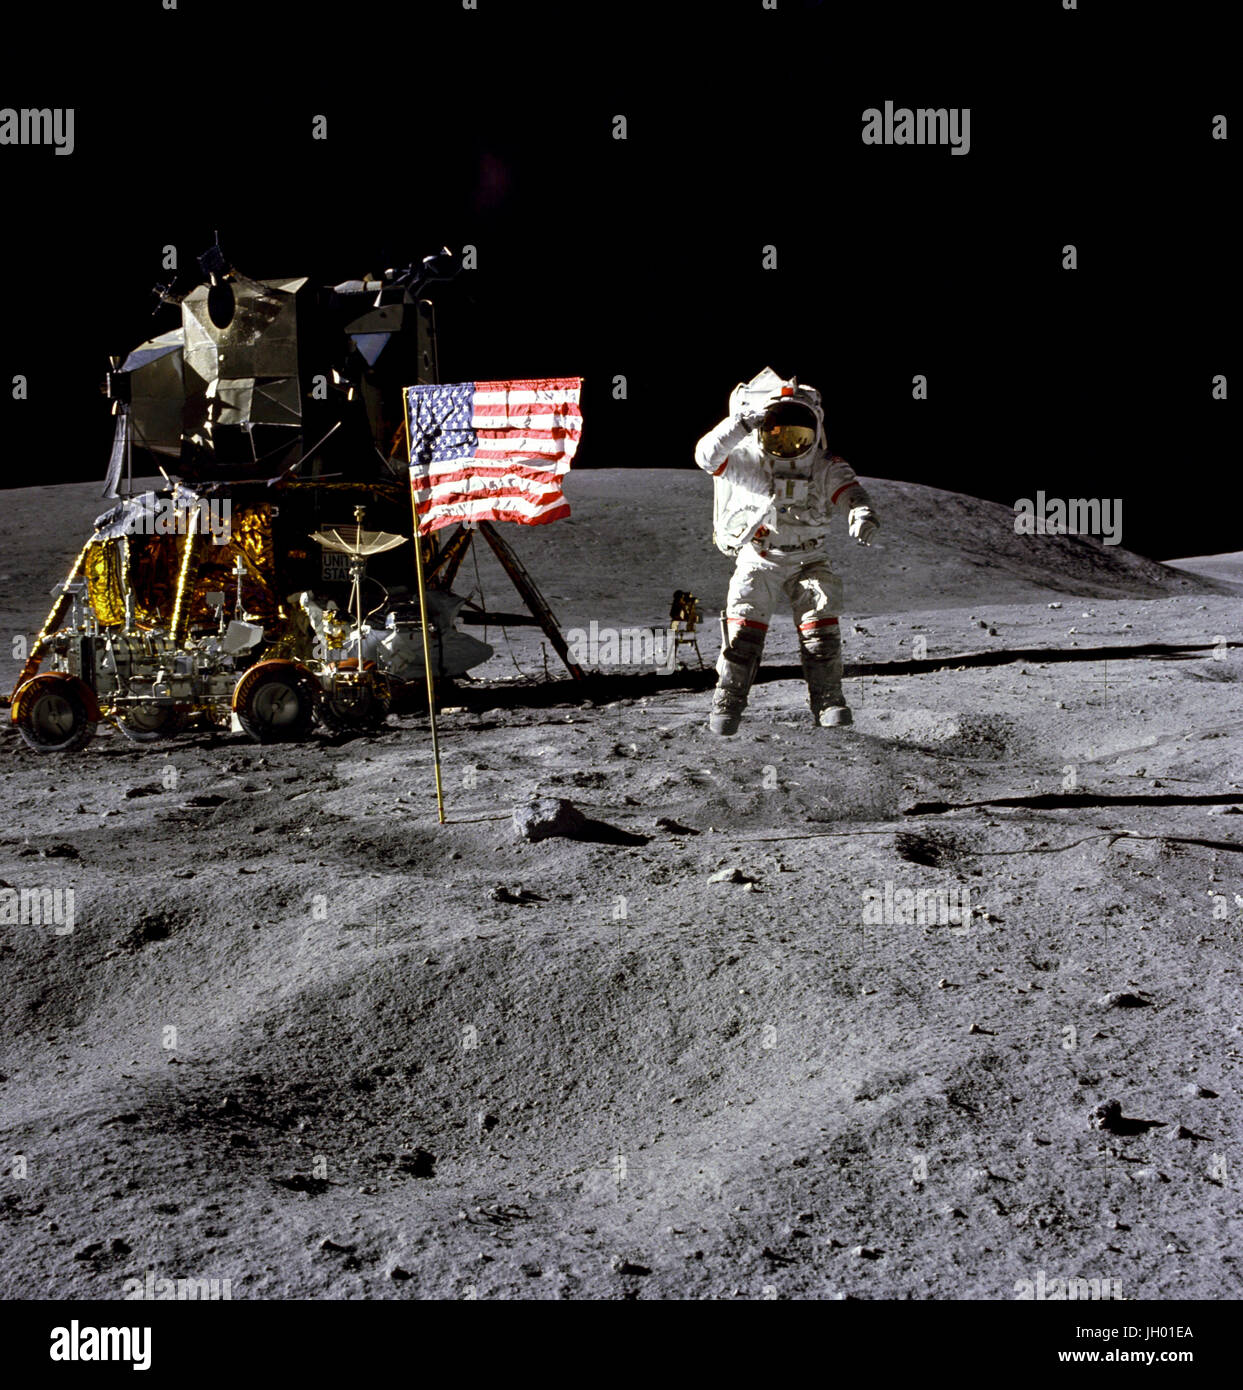 Junge. Astronaut John W. Young, Kommandant der Apollo 16-Mission Mondlandung, springt von der Mondoberfläche als He grüßt die US-Flagge am Landeplatz Descartes während der ersten Apollo 16 Extravehicular Activity (EVA-1). Astronaut Charles M. Duke Jr., Pilot der Mondlandefähre, nahm dieses Bild. Die Mondlandefähre (LM) "Orion" ist auf der linken Seite. Das Lunar Roving Vehicle ist neben der LM geparkt. Das Objekt hinter Young im Schatten der LM ist der weit Ultraviolett Kamera/Spektrograph. Stone Mountain dominiert den Hintergrund in dieser lunar Szene. Fotograf: NASA /Charles M. Duke Jr. Stockfoto